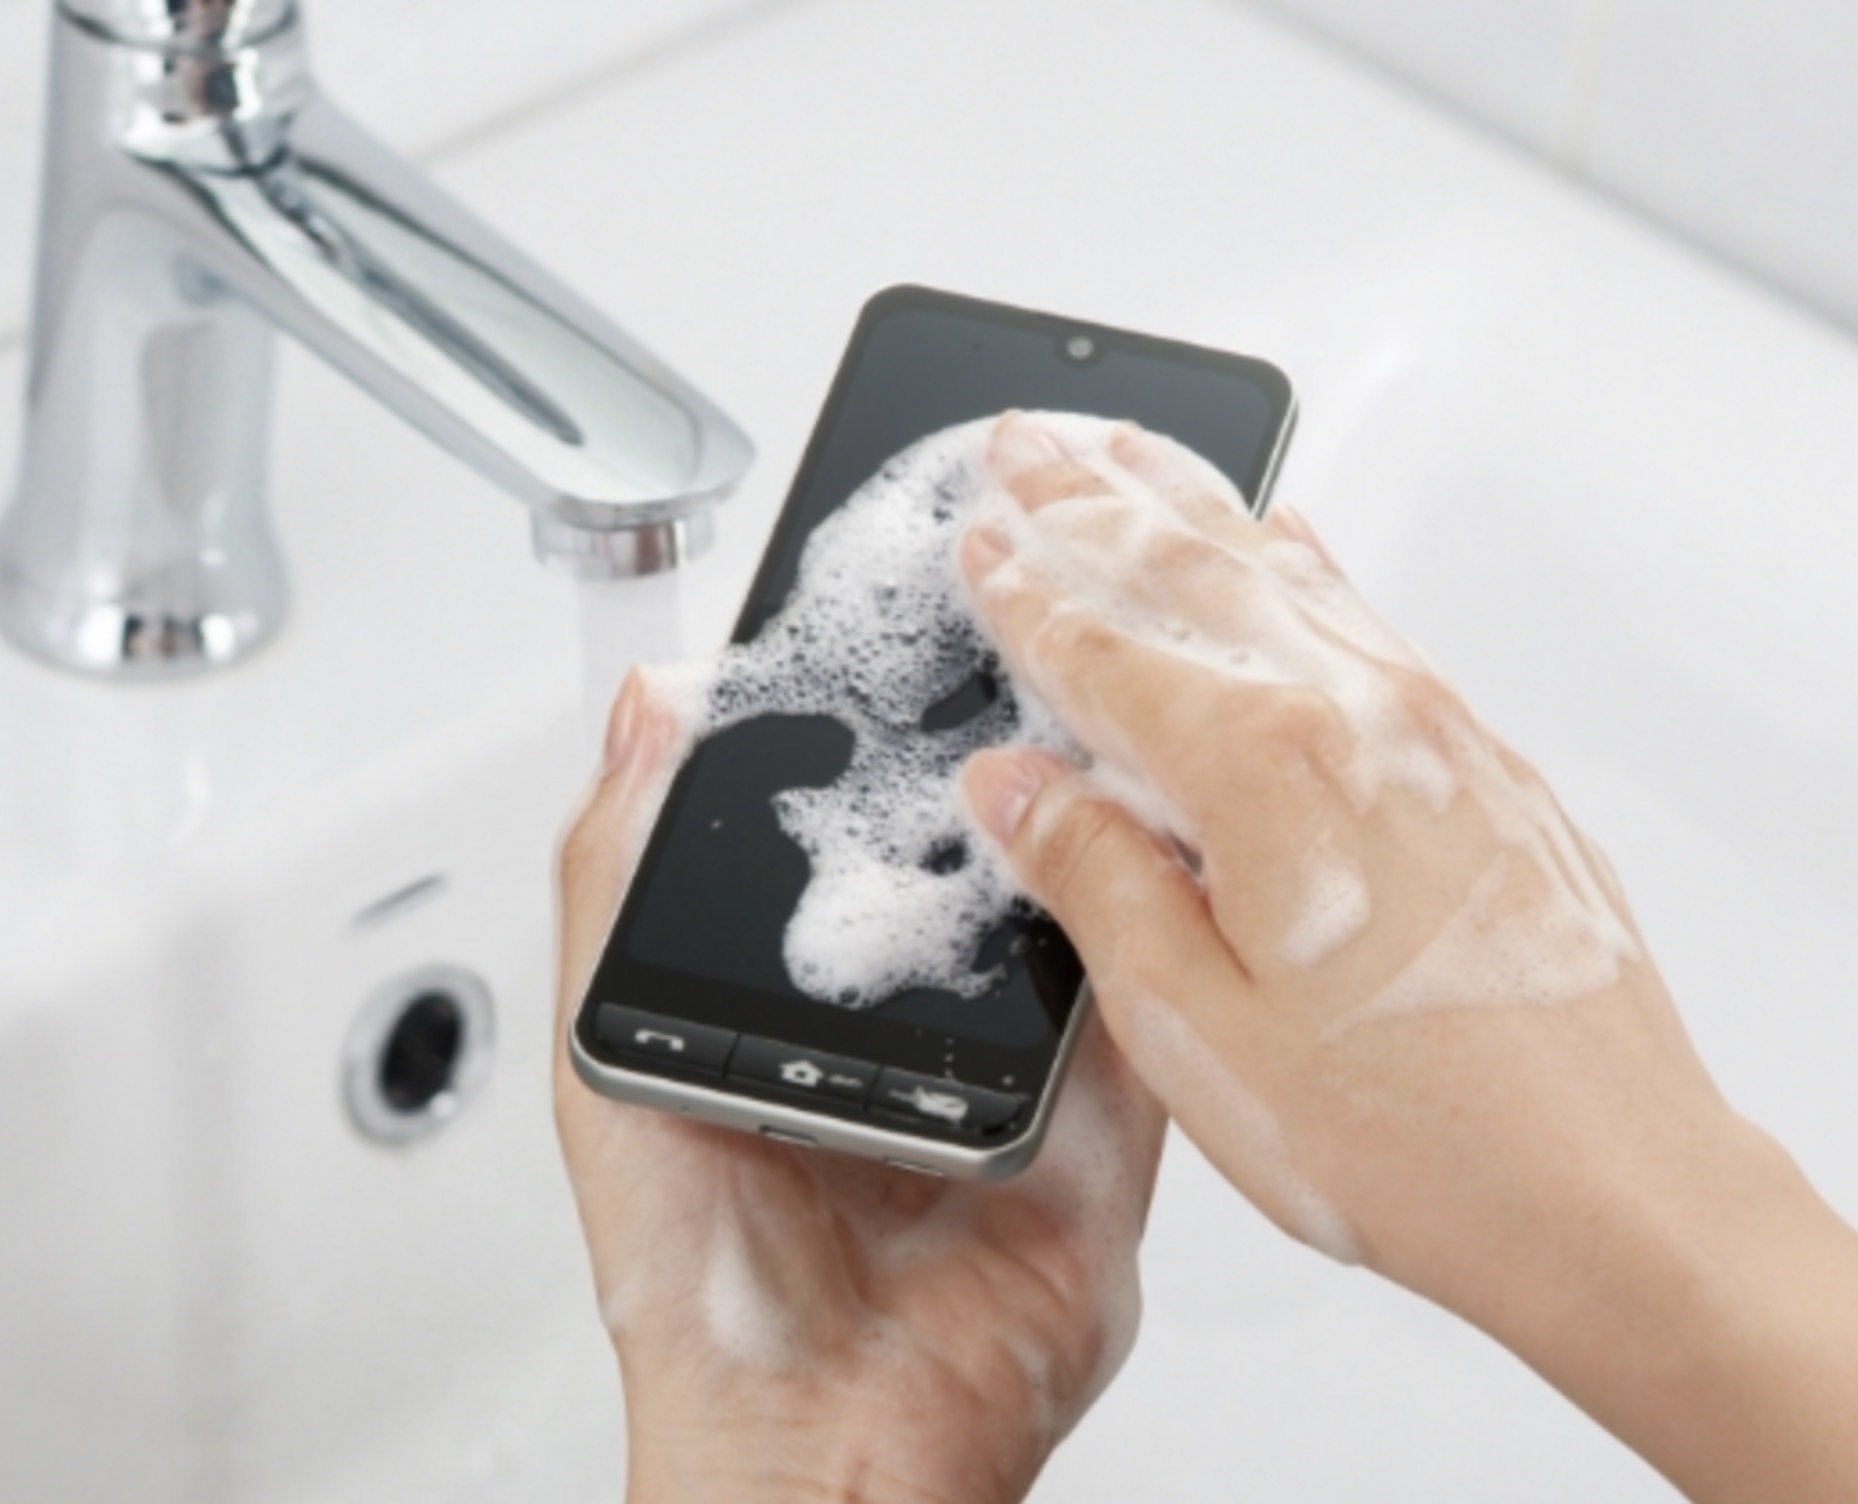 Японская компания Sharp представила смартфон, который можно мыть жидким мылом